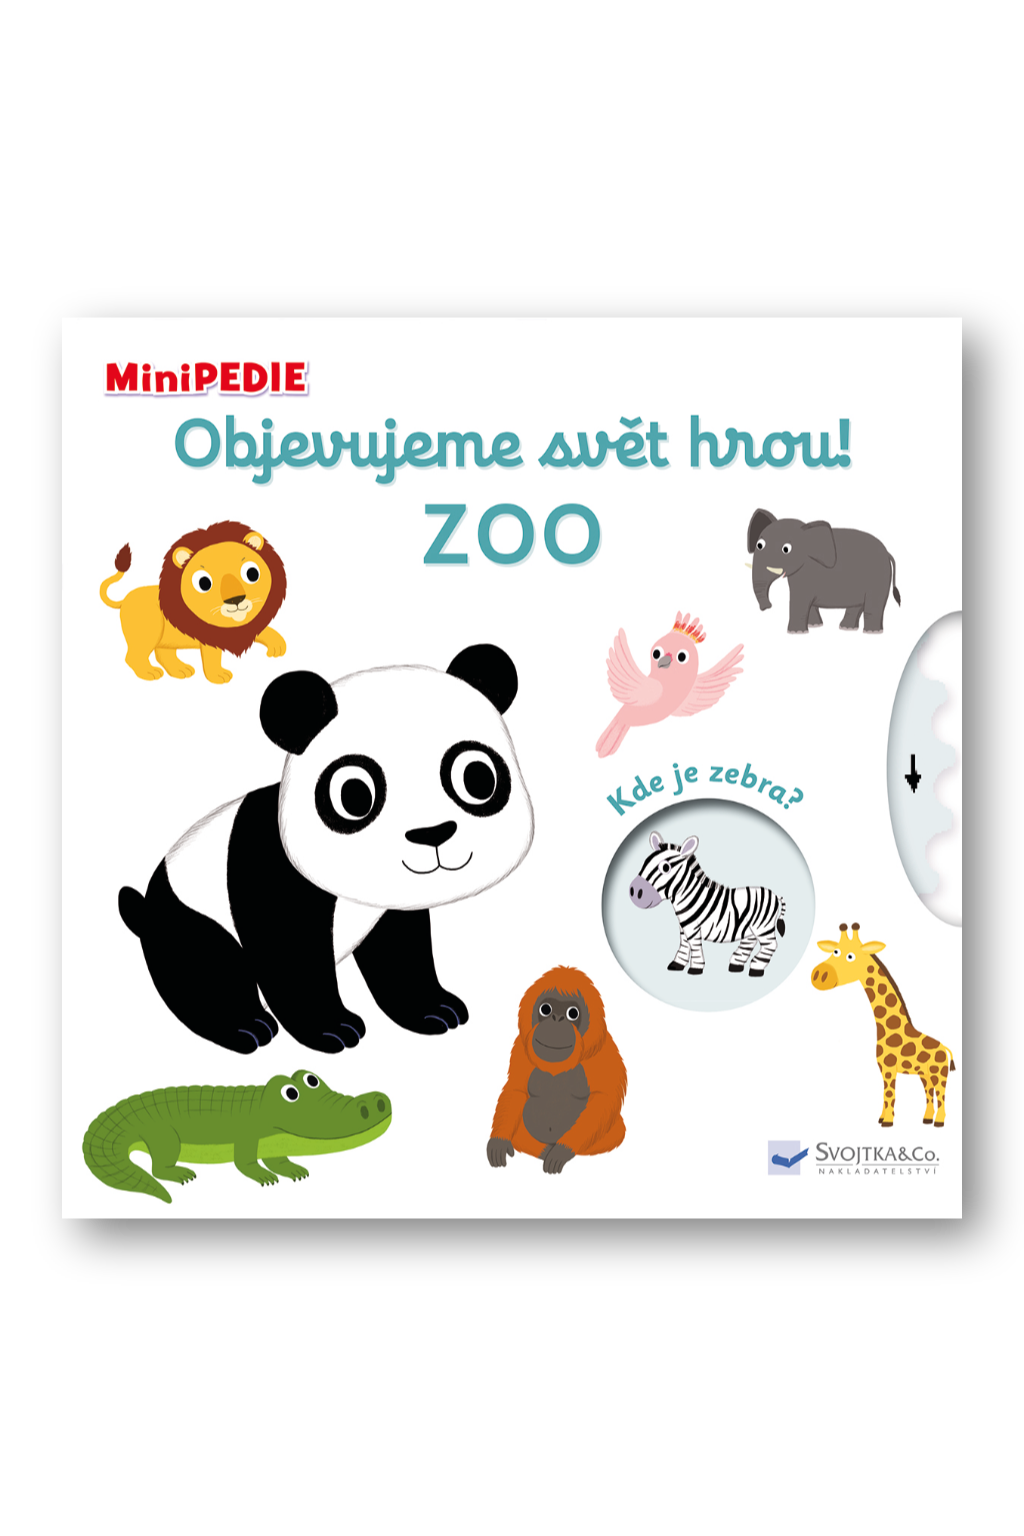 MiniPEDIE – Objevujeme svět hrou! Zoo Nathalie Choux